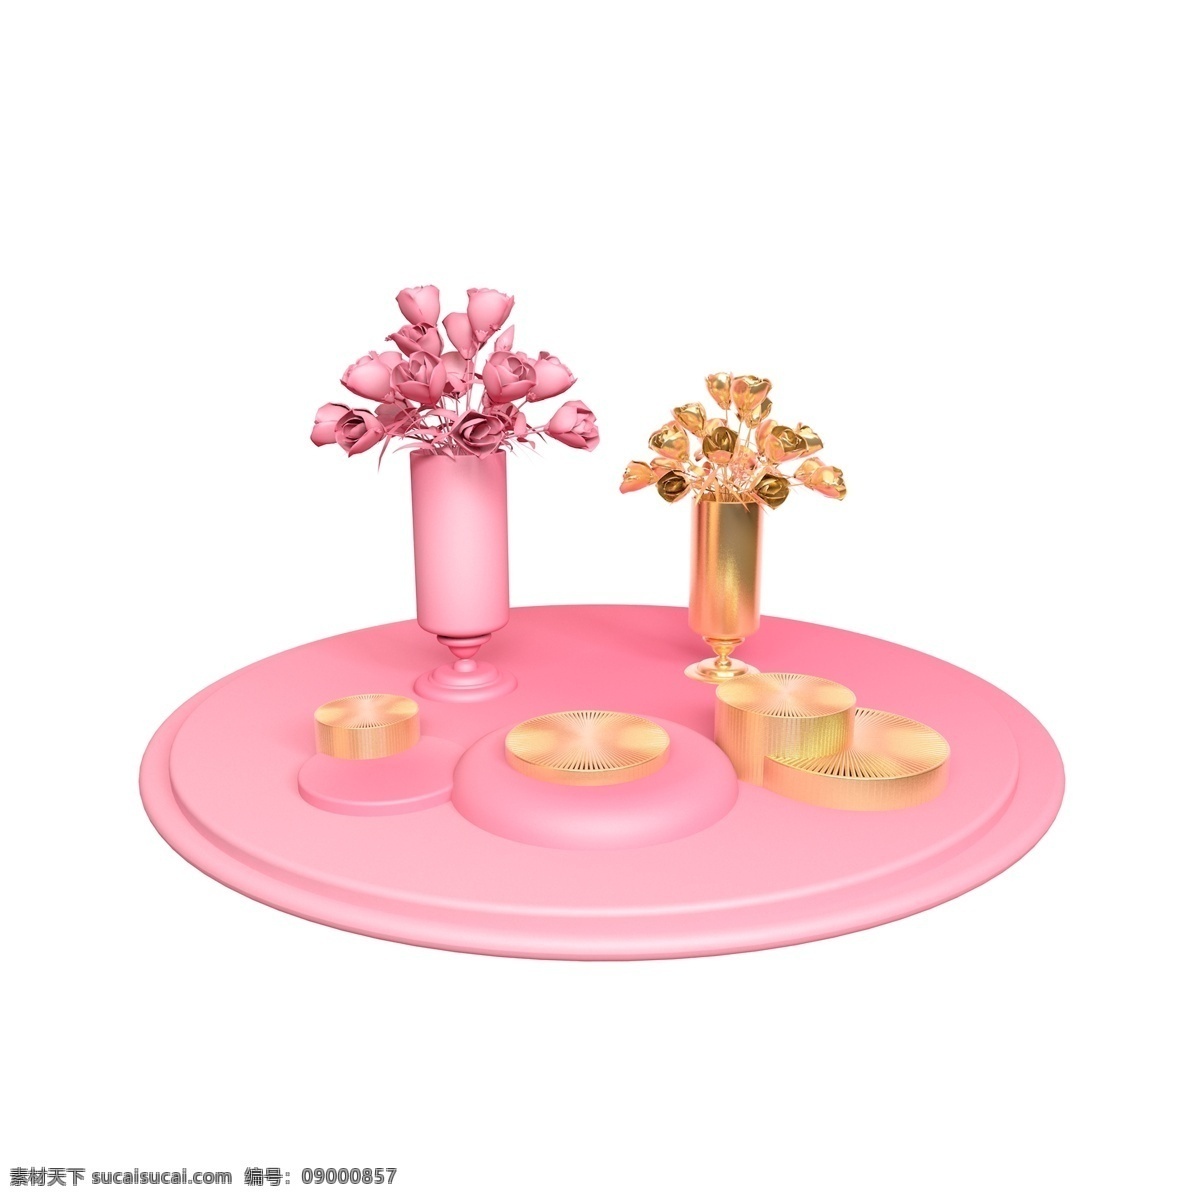 桌摆花瓶舞台 立体 粉色 桌摆